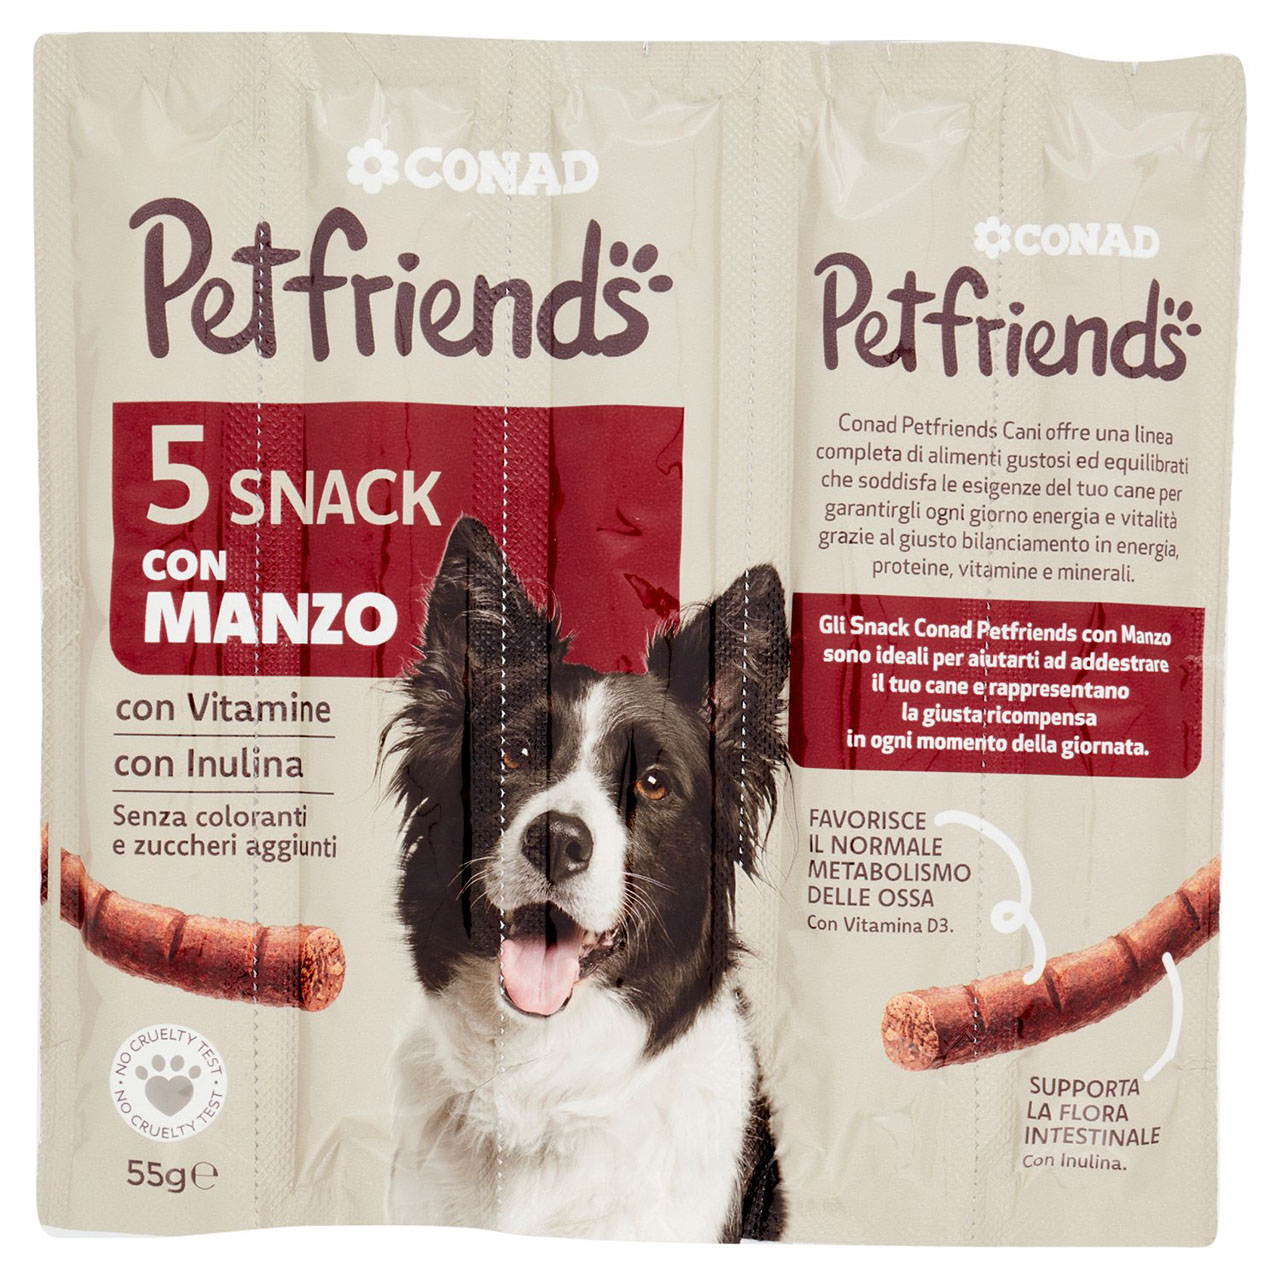 Petfriends Snack con Manzo Conad 5 x 11 g Conad